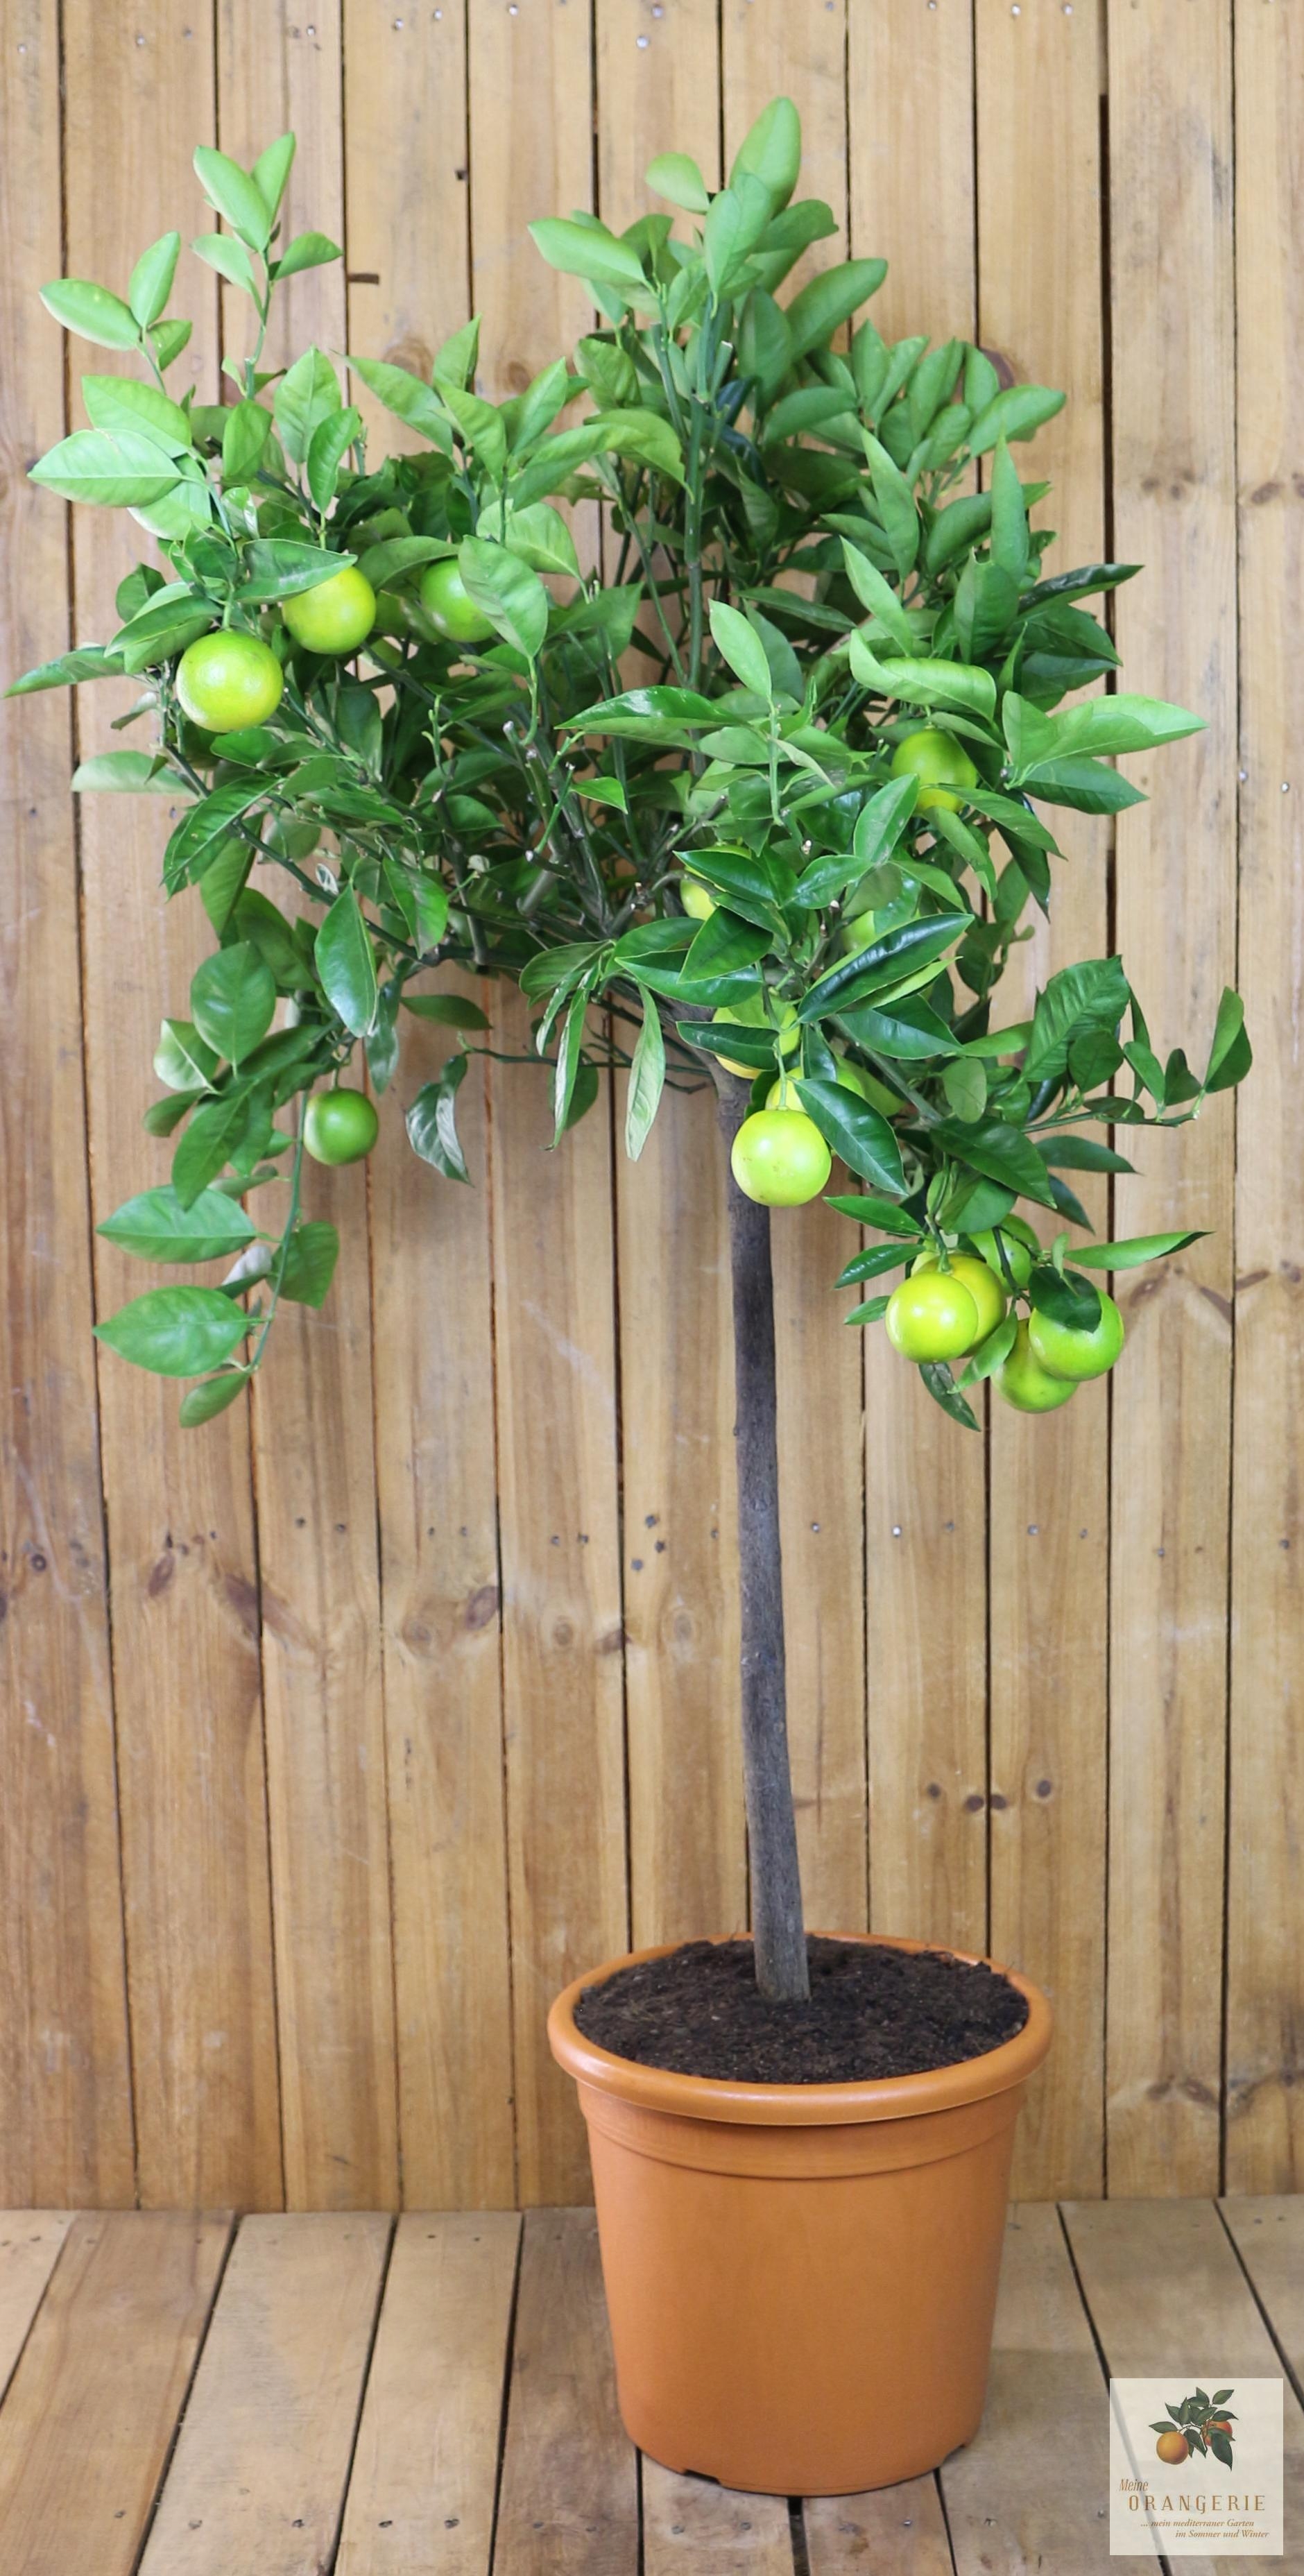 Orangenbaum [Grande] - Citrus Sinensis - Apfelsine